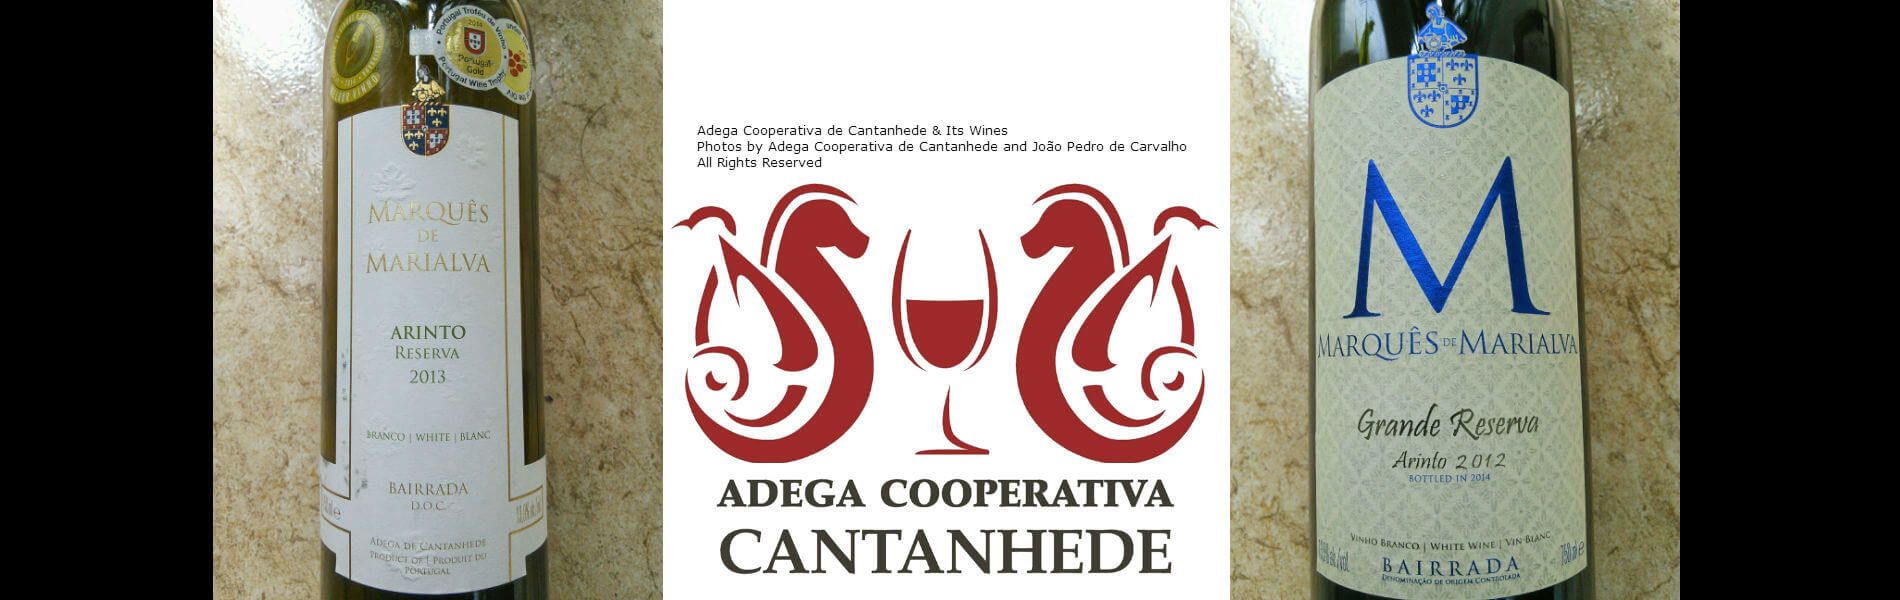 Blend-All-About-Wine-Marques-de-Marialva-Adega-de-Cantanhede-Slider-2